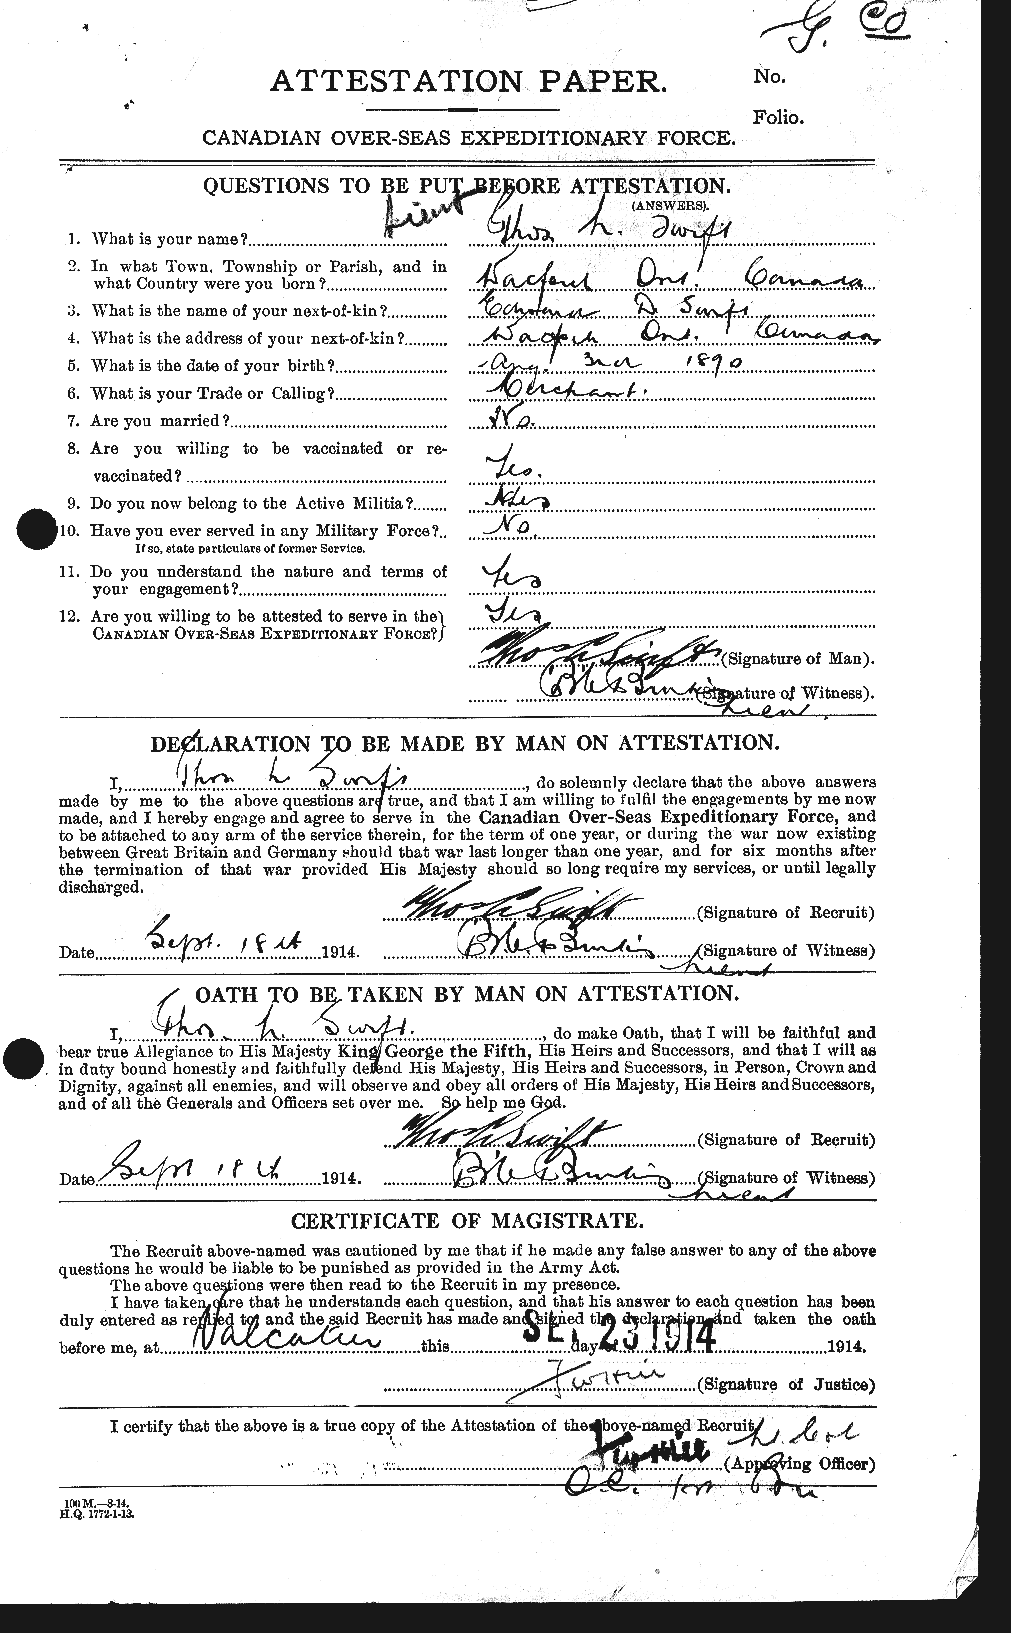 Dossiers du Personnel de la Première Guerre mondiale - CEC 128518a